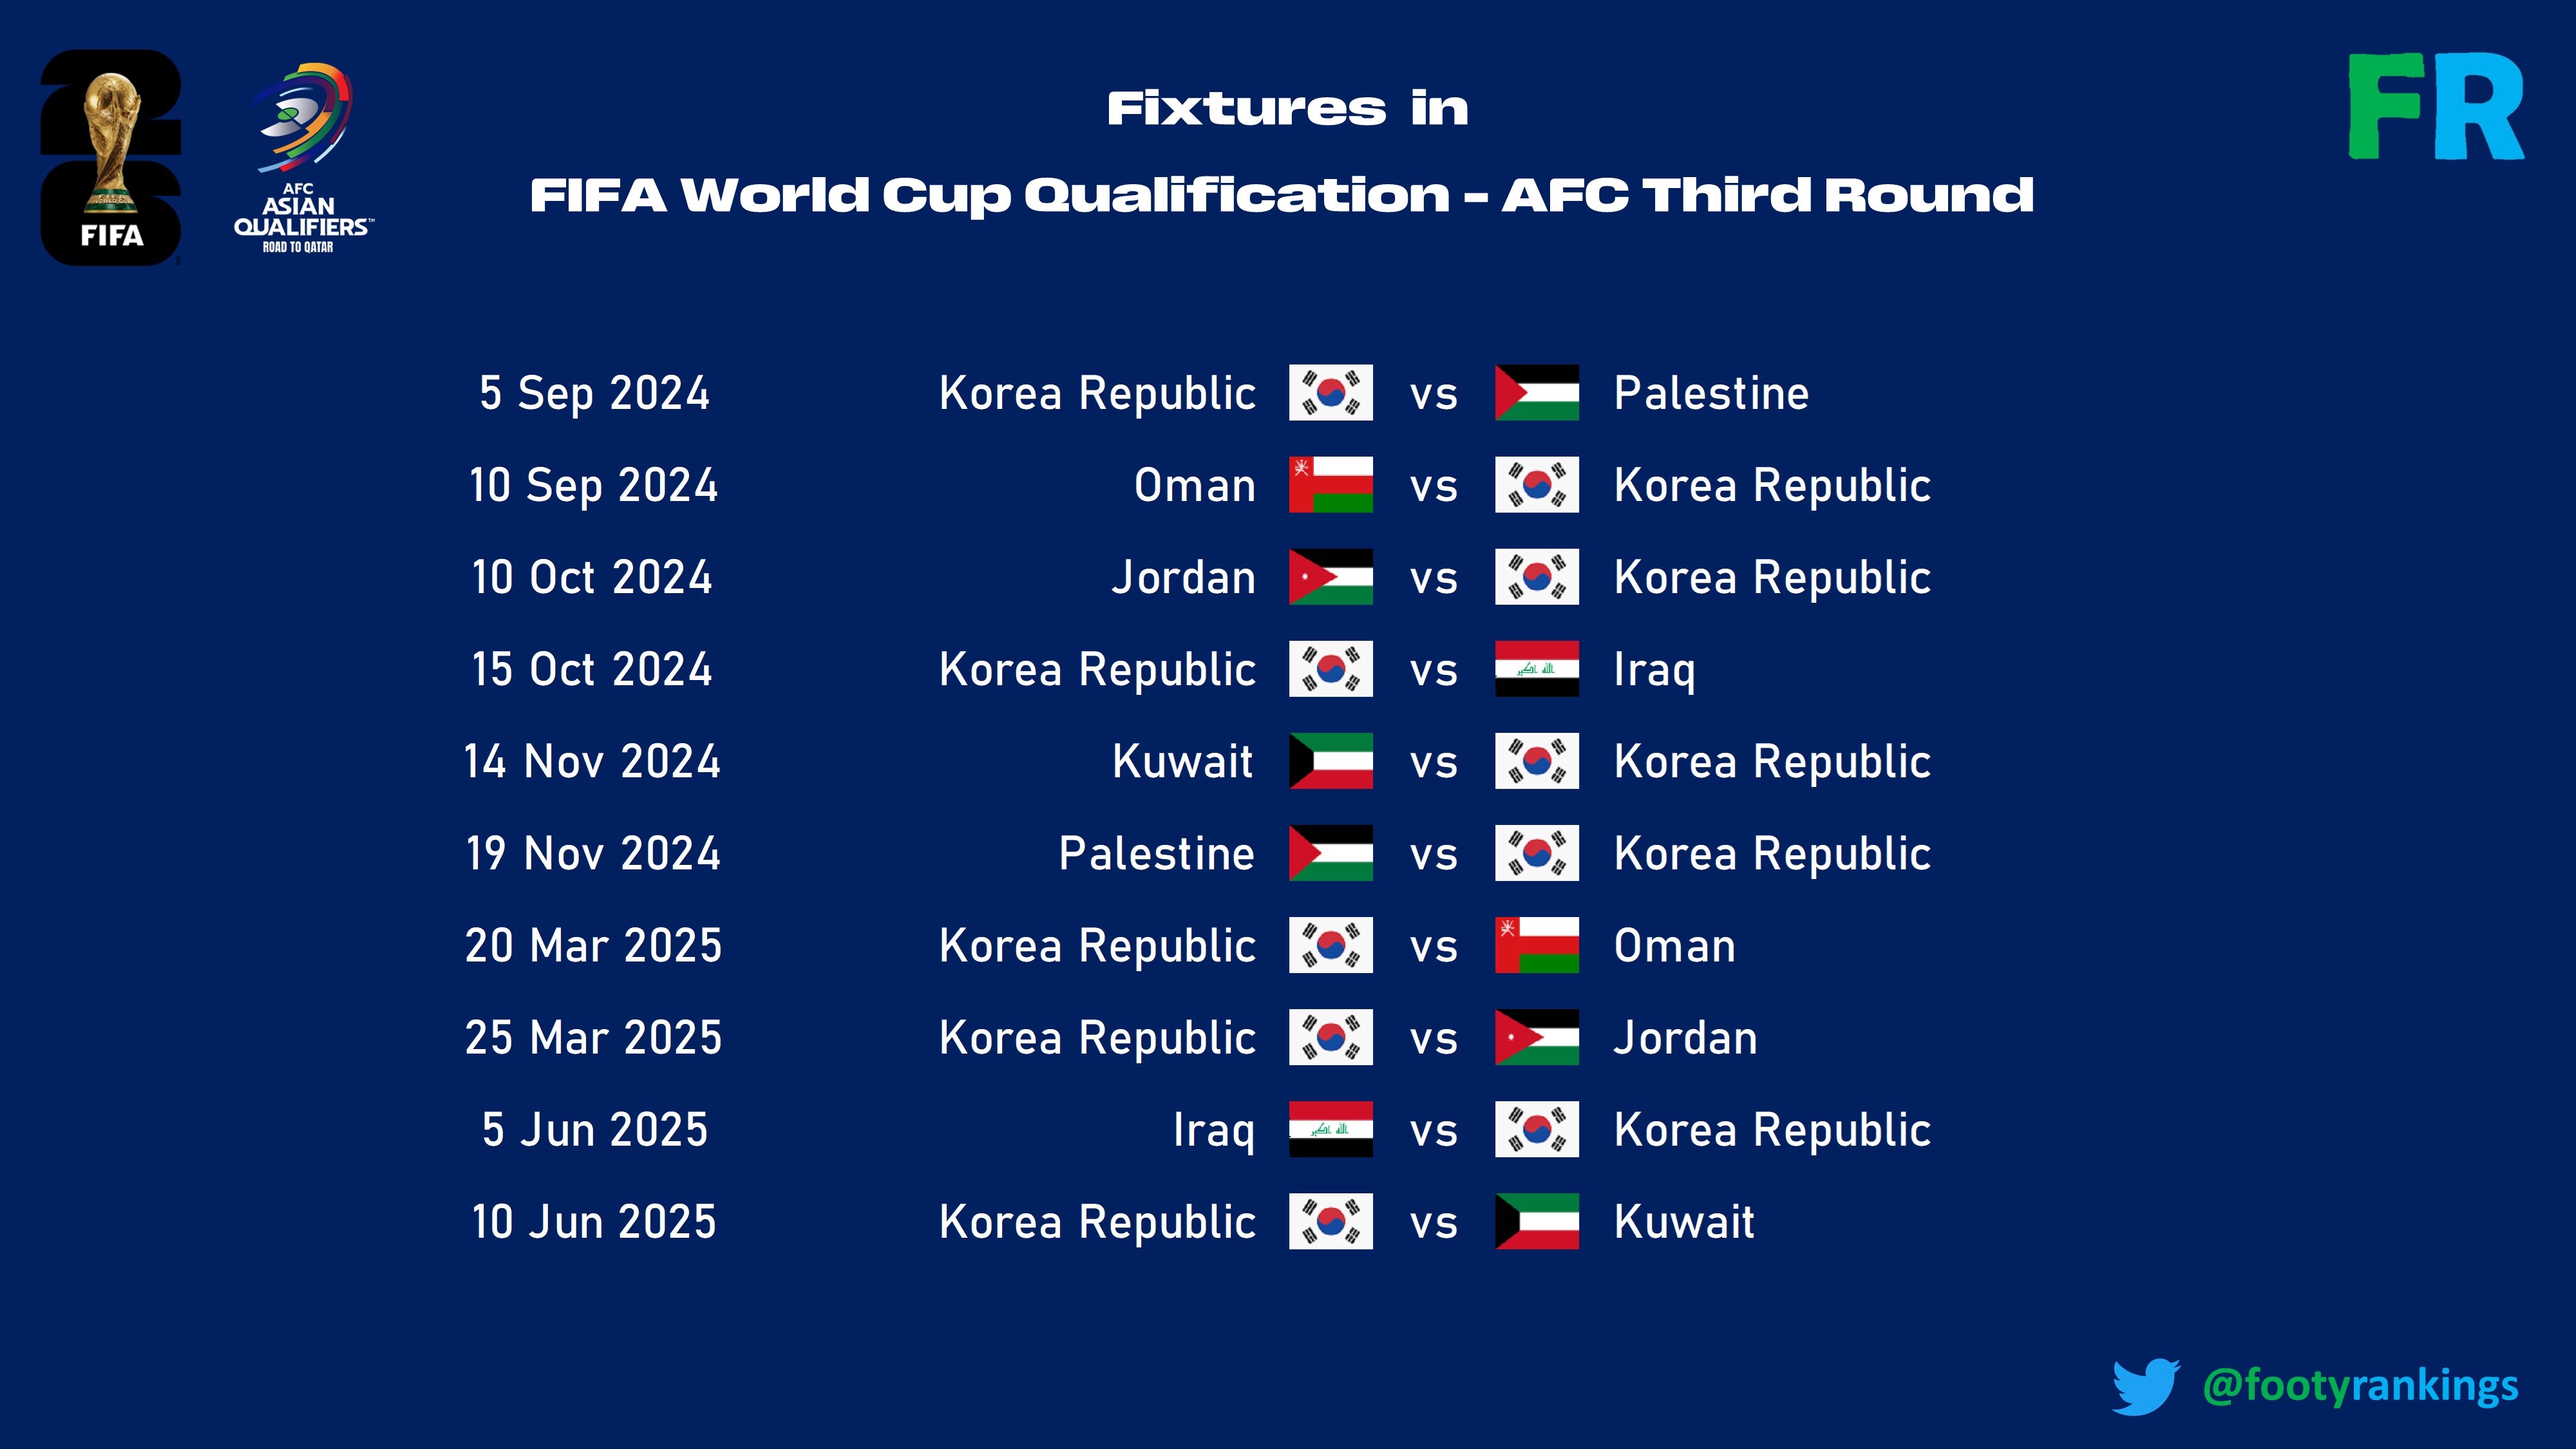 27일(한국시간) 말레이시아 쿠알라룸푸르에 있는 아시아축구연맹(AFC) 본부에서 진행된 2026 북중미 월드컵 아시아지역 3차 예선 조추첨식에서 한국이 B조에 편성됐다. 한국은 B조에서 이라크(55위), 요르단(68위), 오만(76위), 팔레스타인(95위), 쿠웨이트(137위)와 한 조에 속했다. 푸티랭킹스